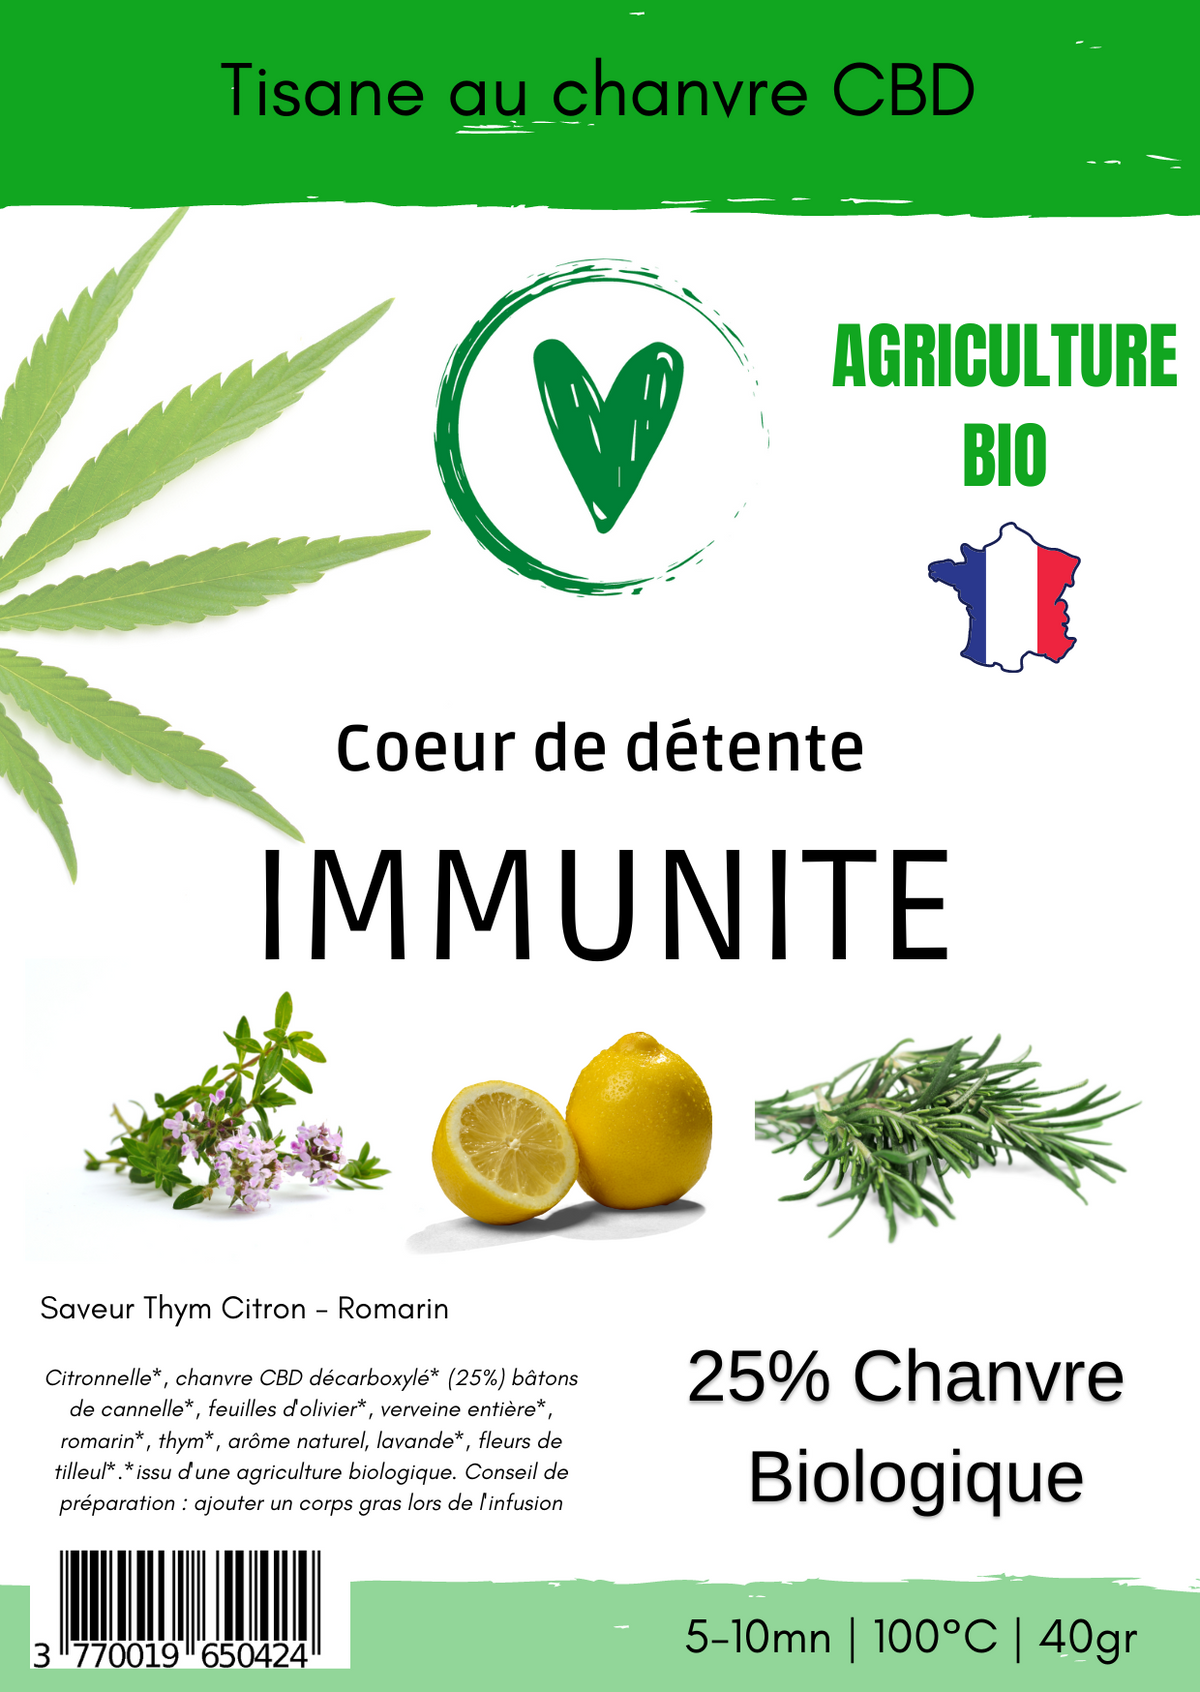 Infusion CBD Tisane de plantes Bio au chanvre CBD 25% | Immunité - Citron Thym Romarin